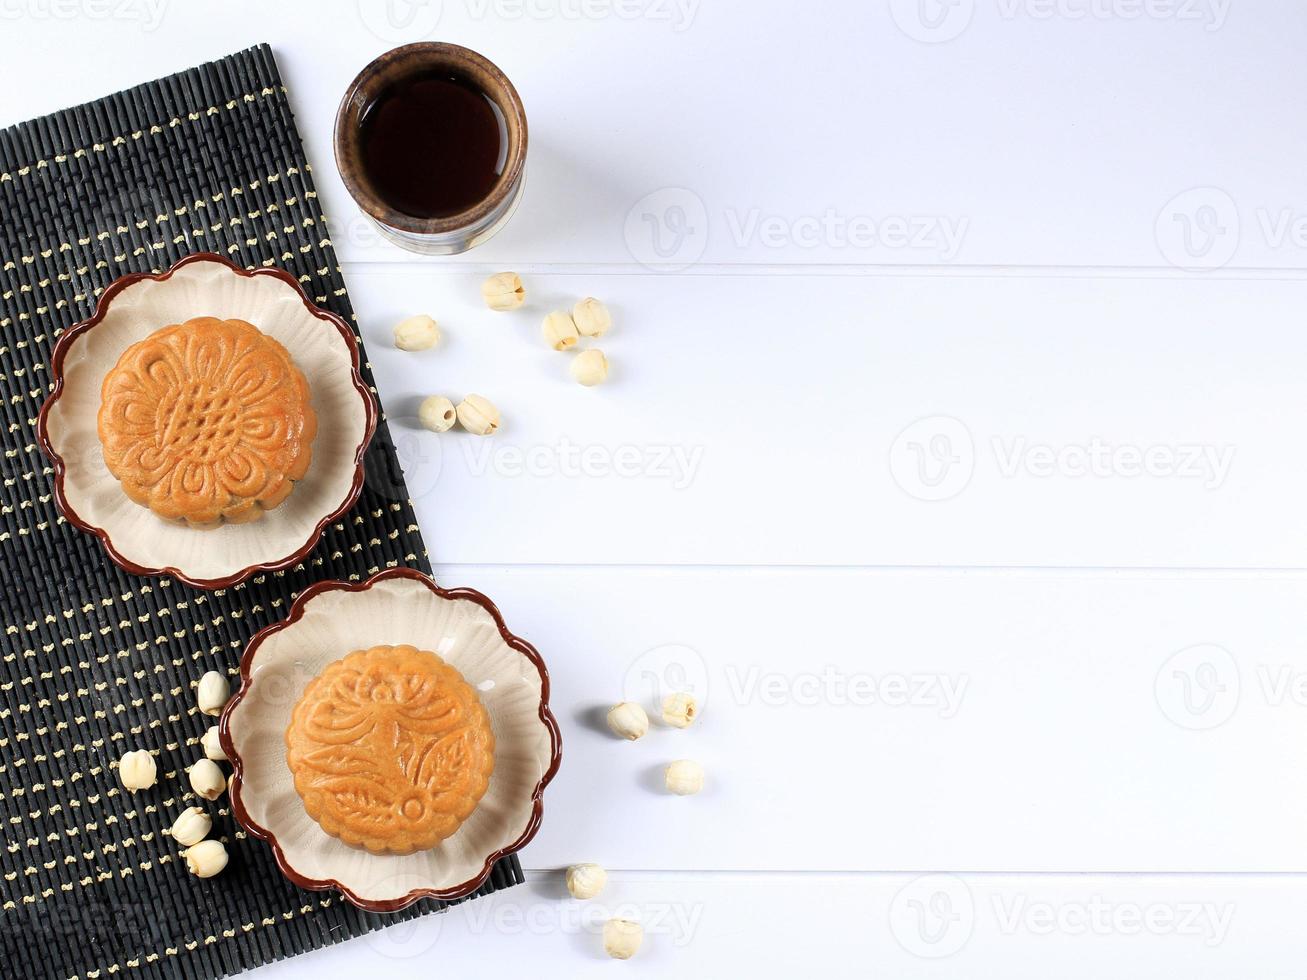 Mondkuchen auf weißem Hintergrund mit Tee. konzept mondkuchen auf mittherbstfest oder chinesischem neujahr. Mondkuchen beliebt als Kue Bulan. serviert mit chinesischem Tee foto